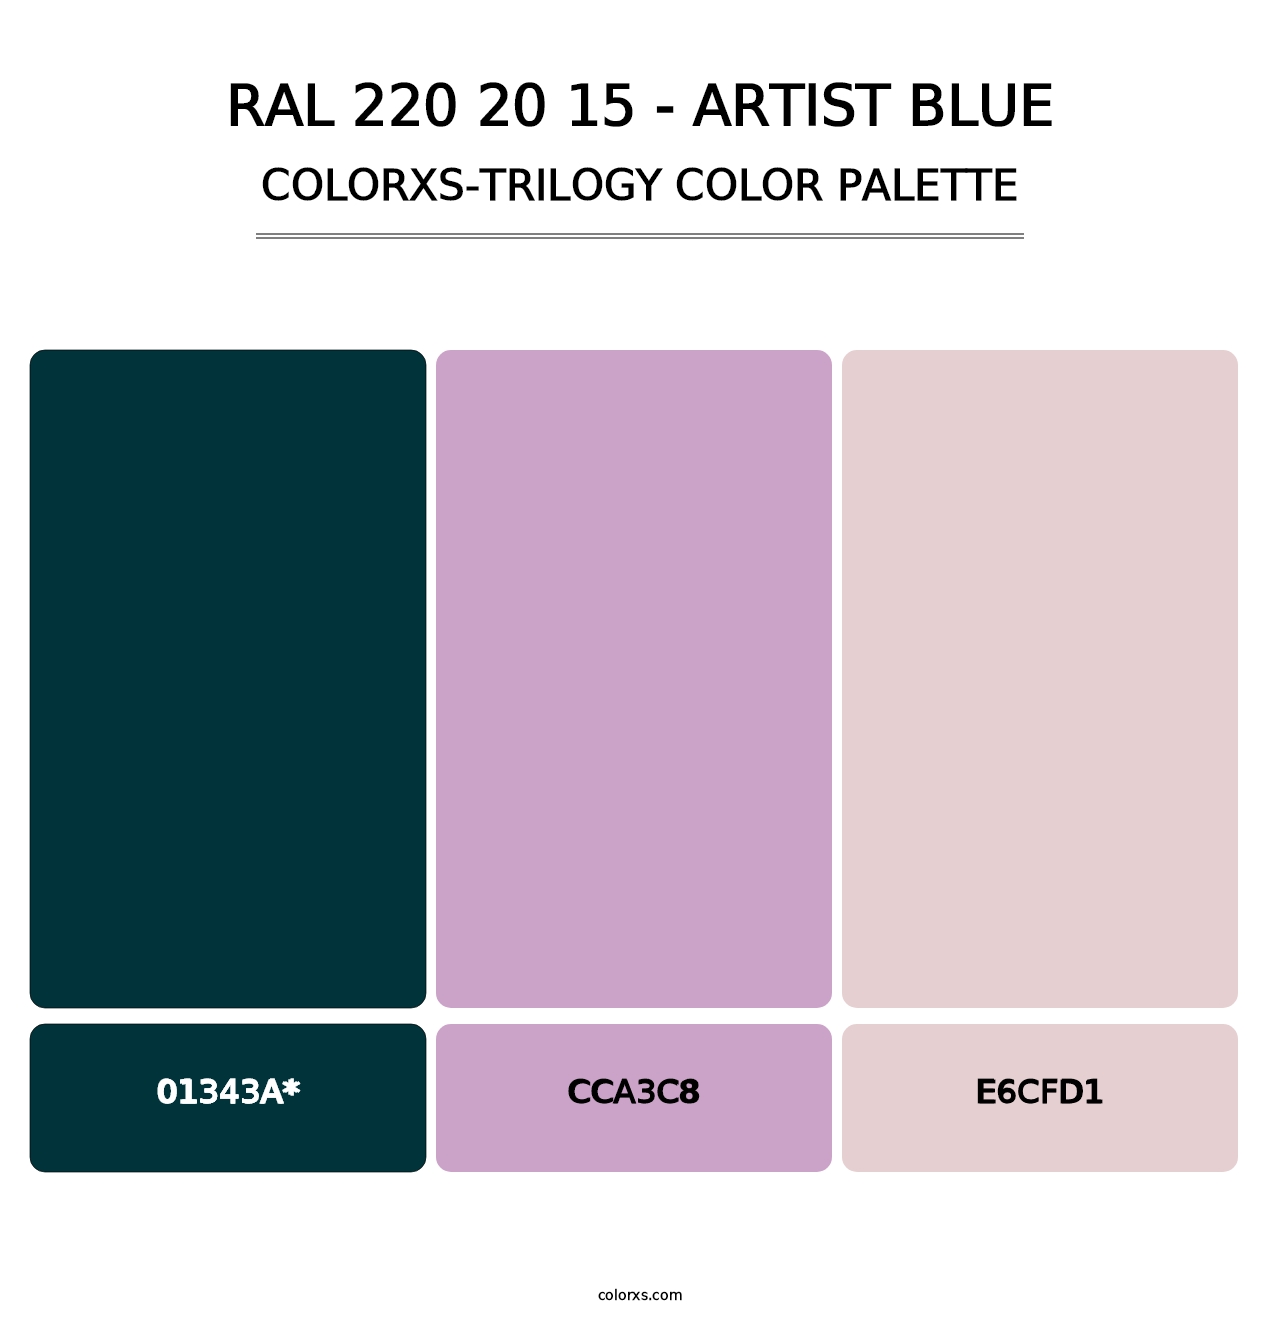 RAL 220 20 15 - Artist Blue - Colorxs Trilogy Palette